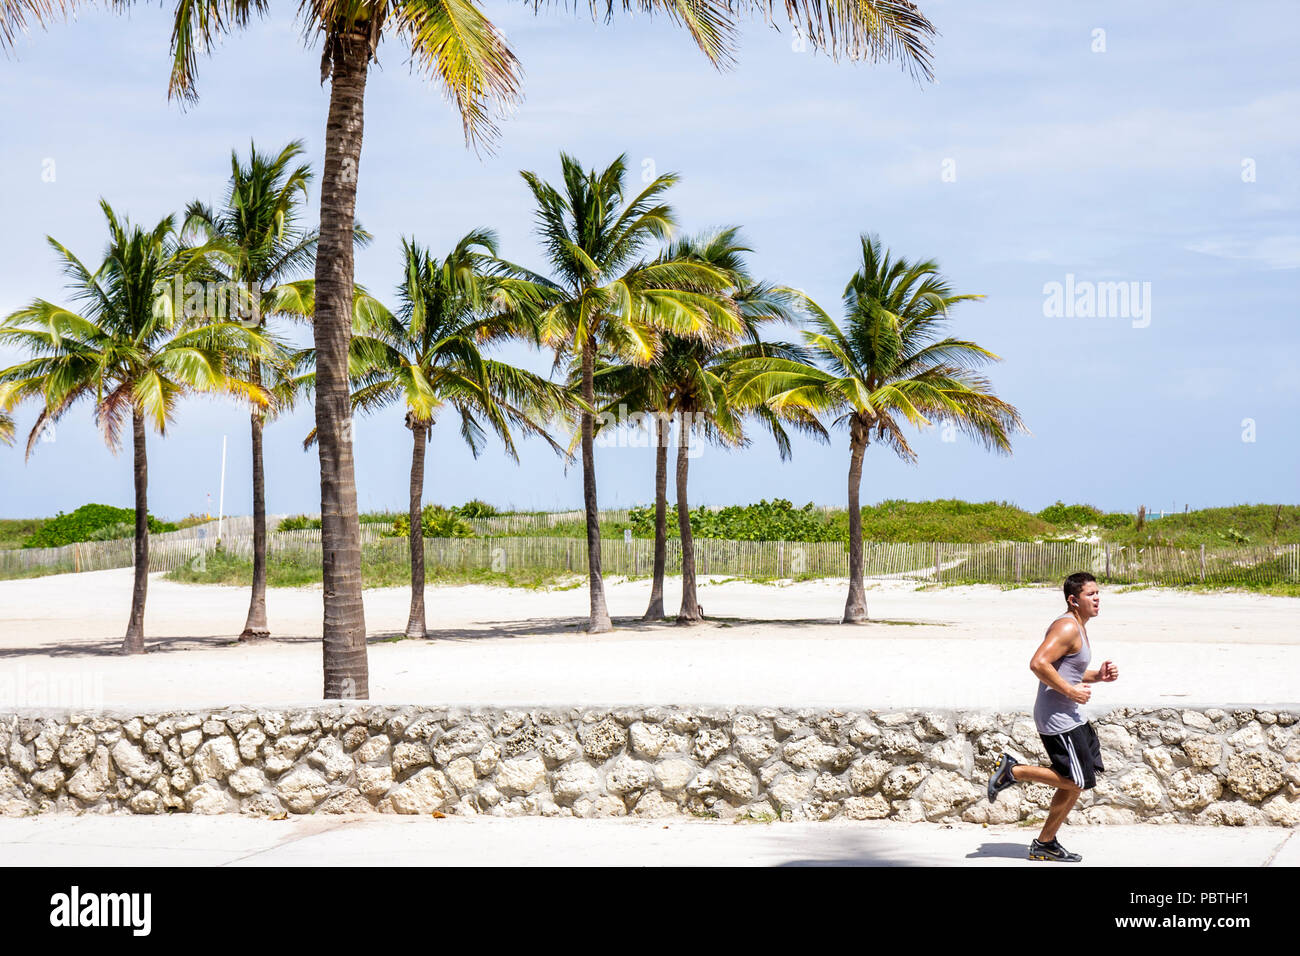 Miami Beach Florida,Lummus Park,Hispanic man hommes,coureur,endurance,course,jogging,jogging,jogging,jogging,coureur,jogging,mur de pierre corail,palmier Banque D'Images